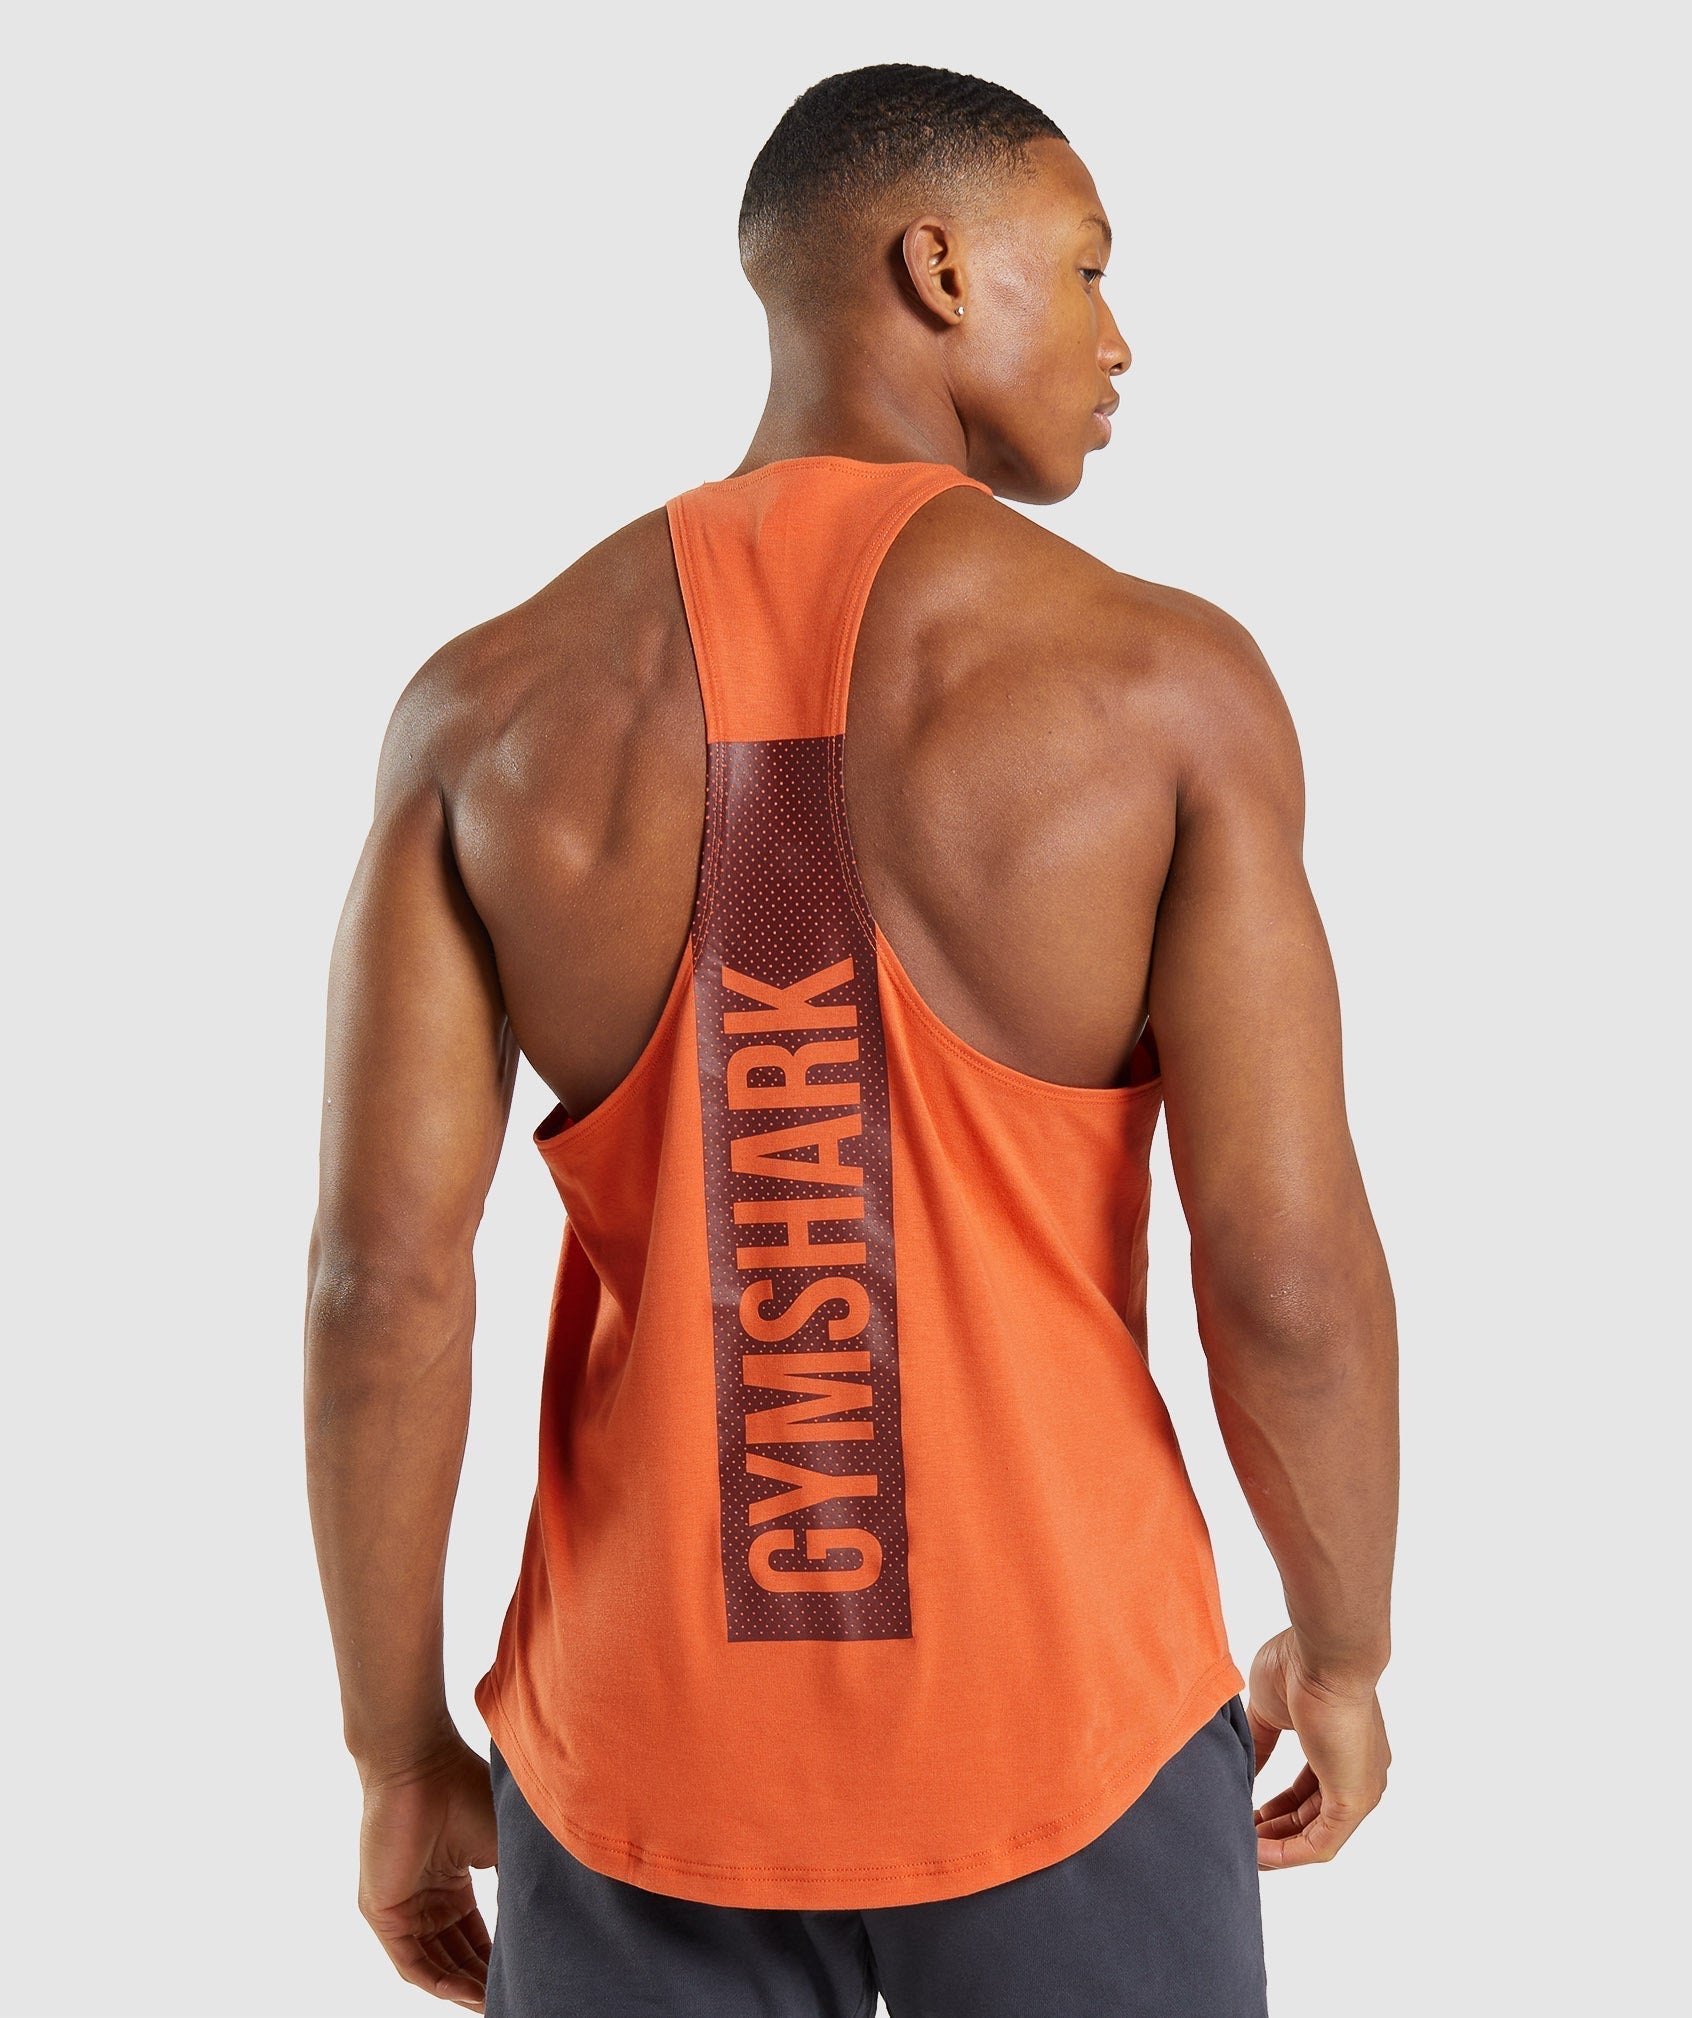 Gymshark Bold Stringer - Clay Orange  Gym wear men, Gymshark, Gym outfit  men